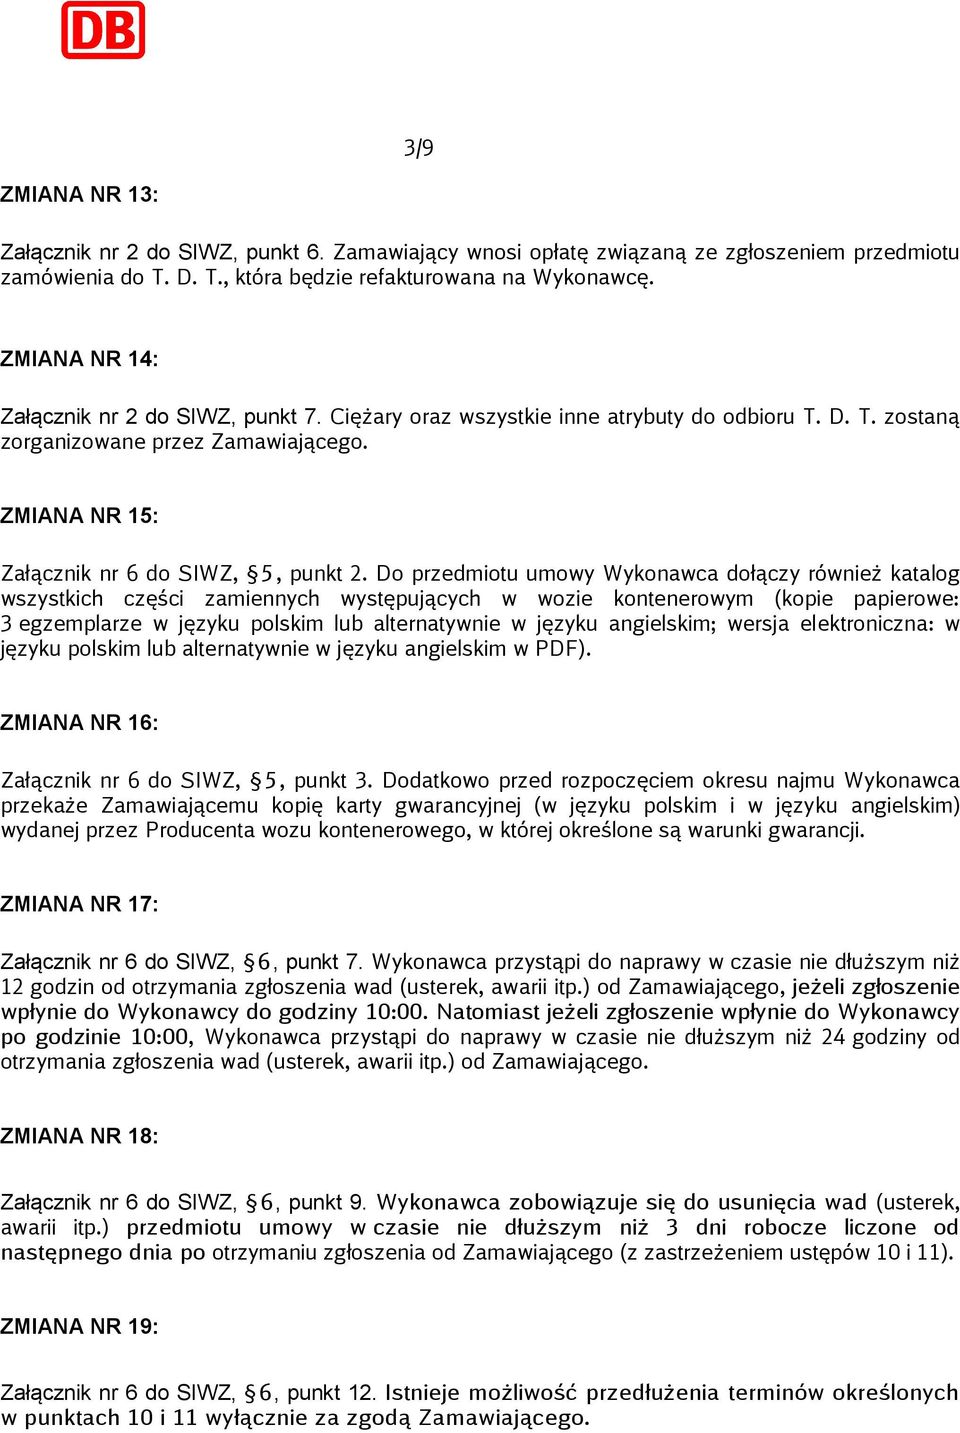 Do przedmiotu umowy Wykonawca dołączy również katalog wszystkich części zamiennych występujących w wozie kontenerowym (kopie papierowe: 3 egzemplarze w języku polskim lub alternatywnie w języku